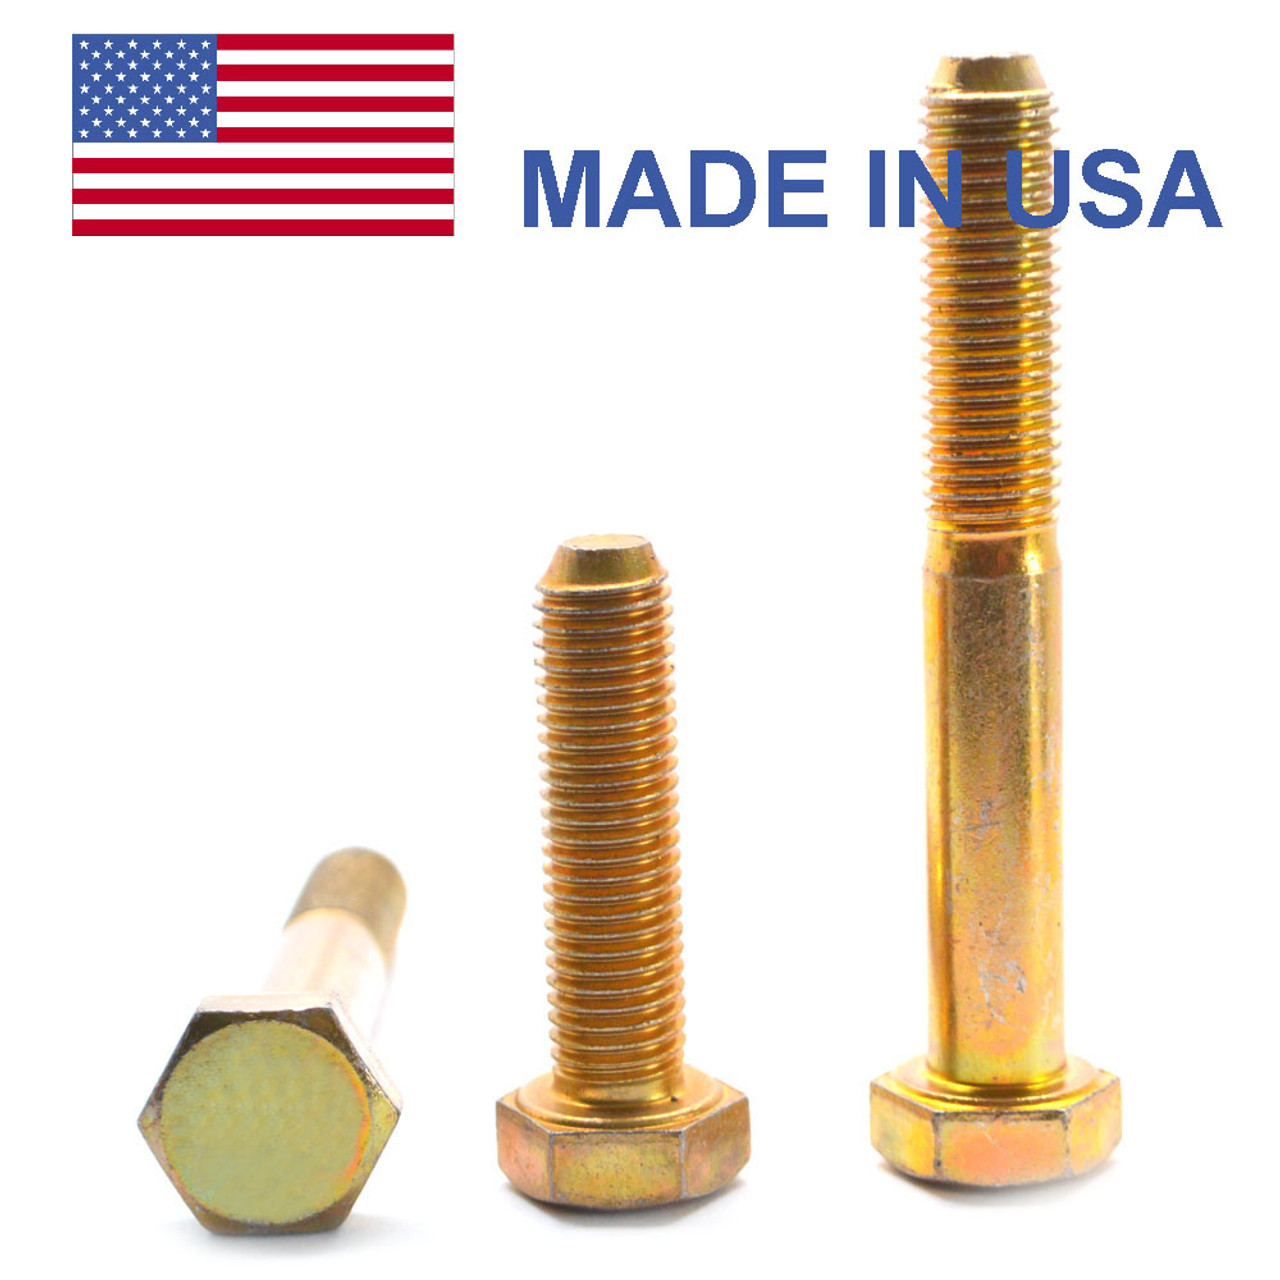 1"-14 x 6" (PT) UNS Thread Grade 8 Hex Cap Screw (Bolt) - USA Alloy Steel Yellow Zinc Plated